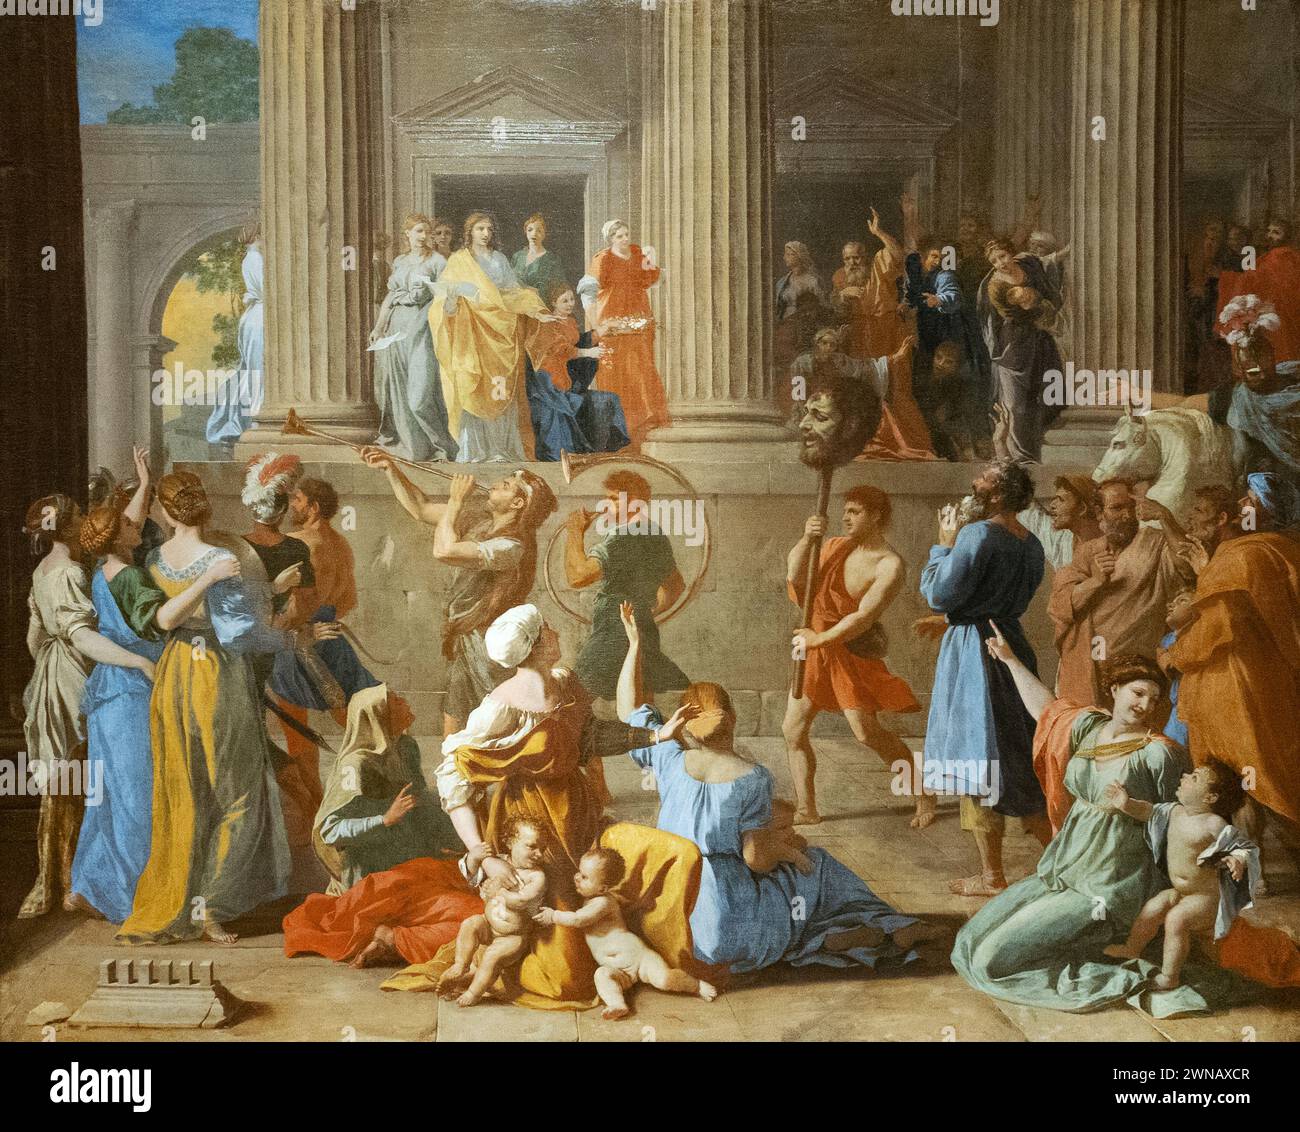 Nicolas Poussin peinture, 'le Triomphe de David'. 1631-33, David et Goliath. David entra à Jérusalem avec la tête de Goliath. peinture du xviie siècle Banque D'Images